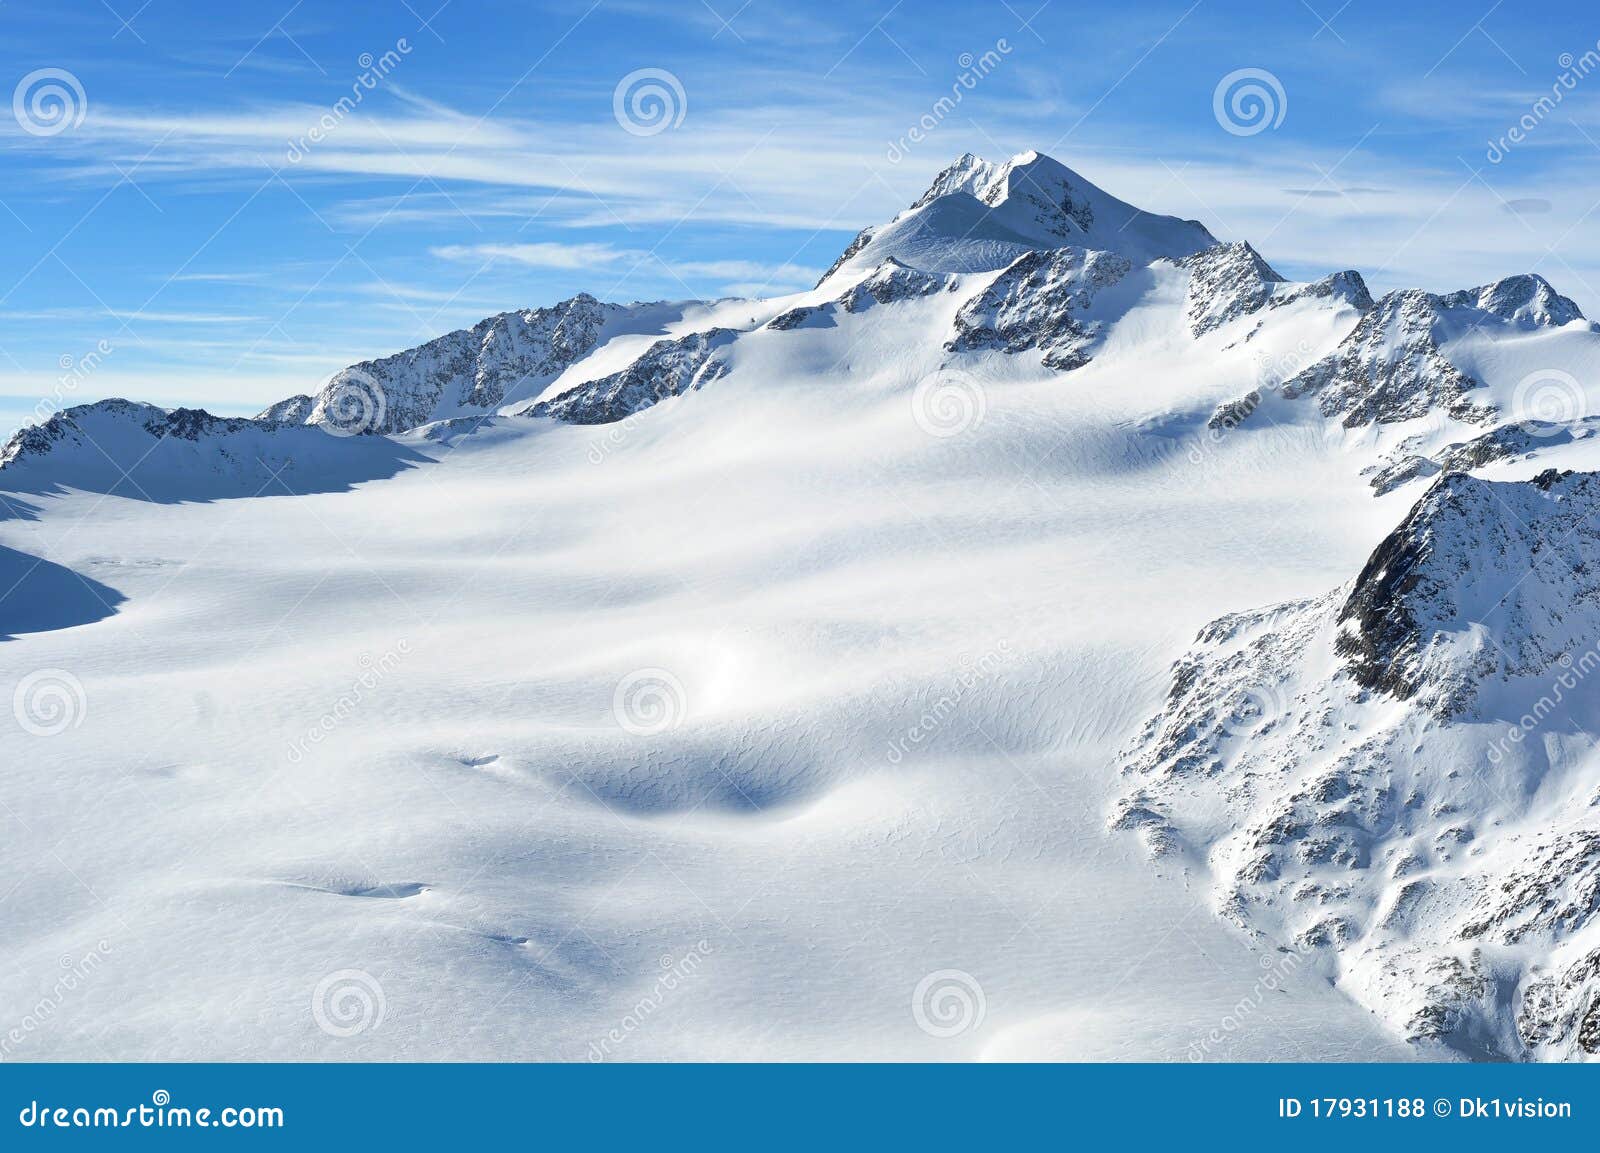 austrian highest mountain wildspitze 3776m.